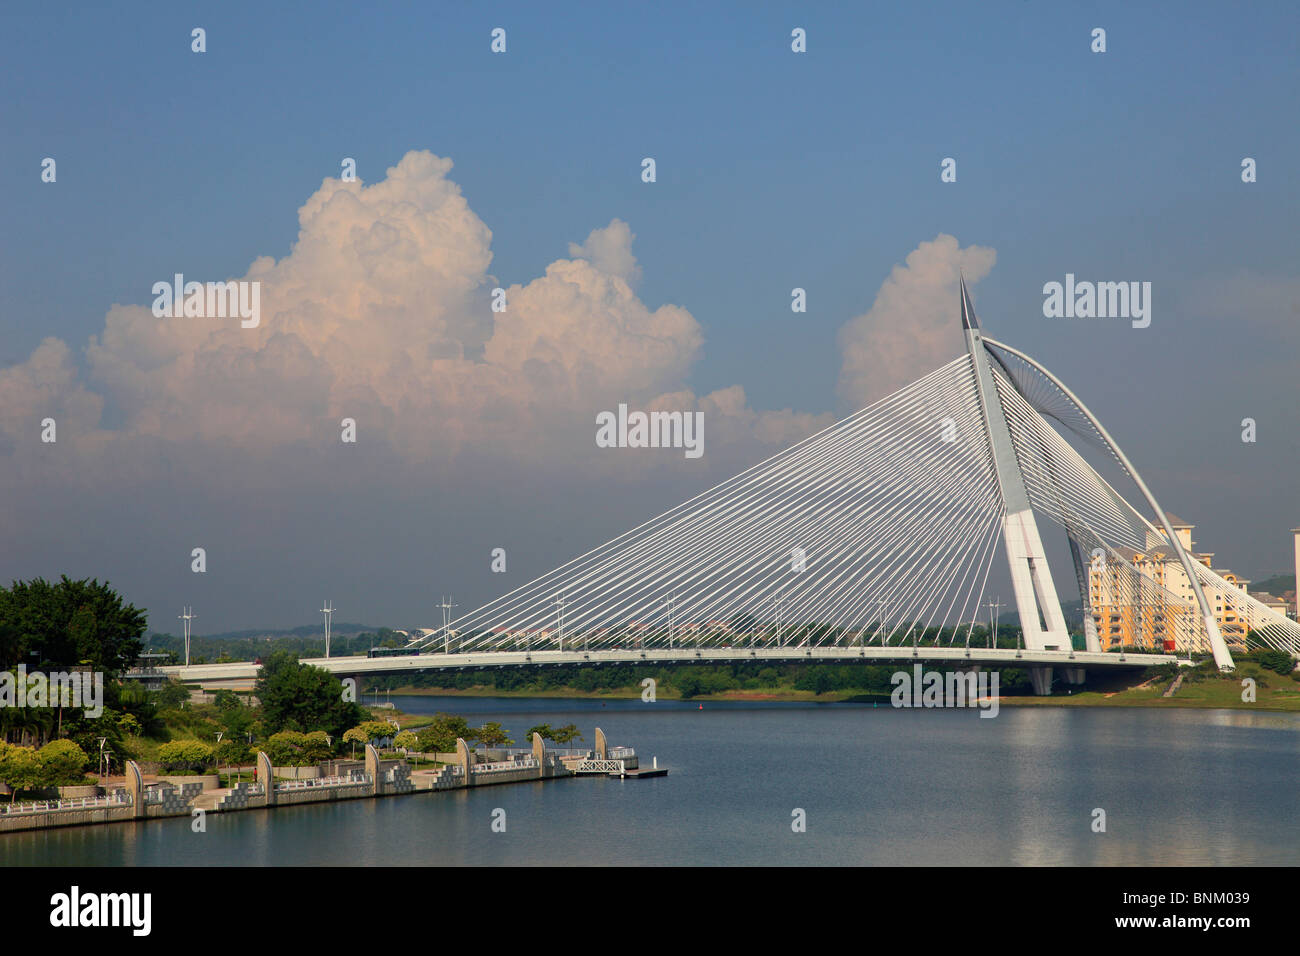 Malaysia, Putrajaya, Seri Wawasan Bridge, lake, Stock Photo